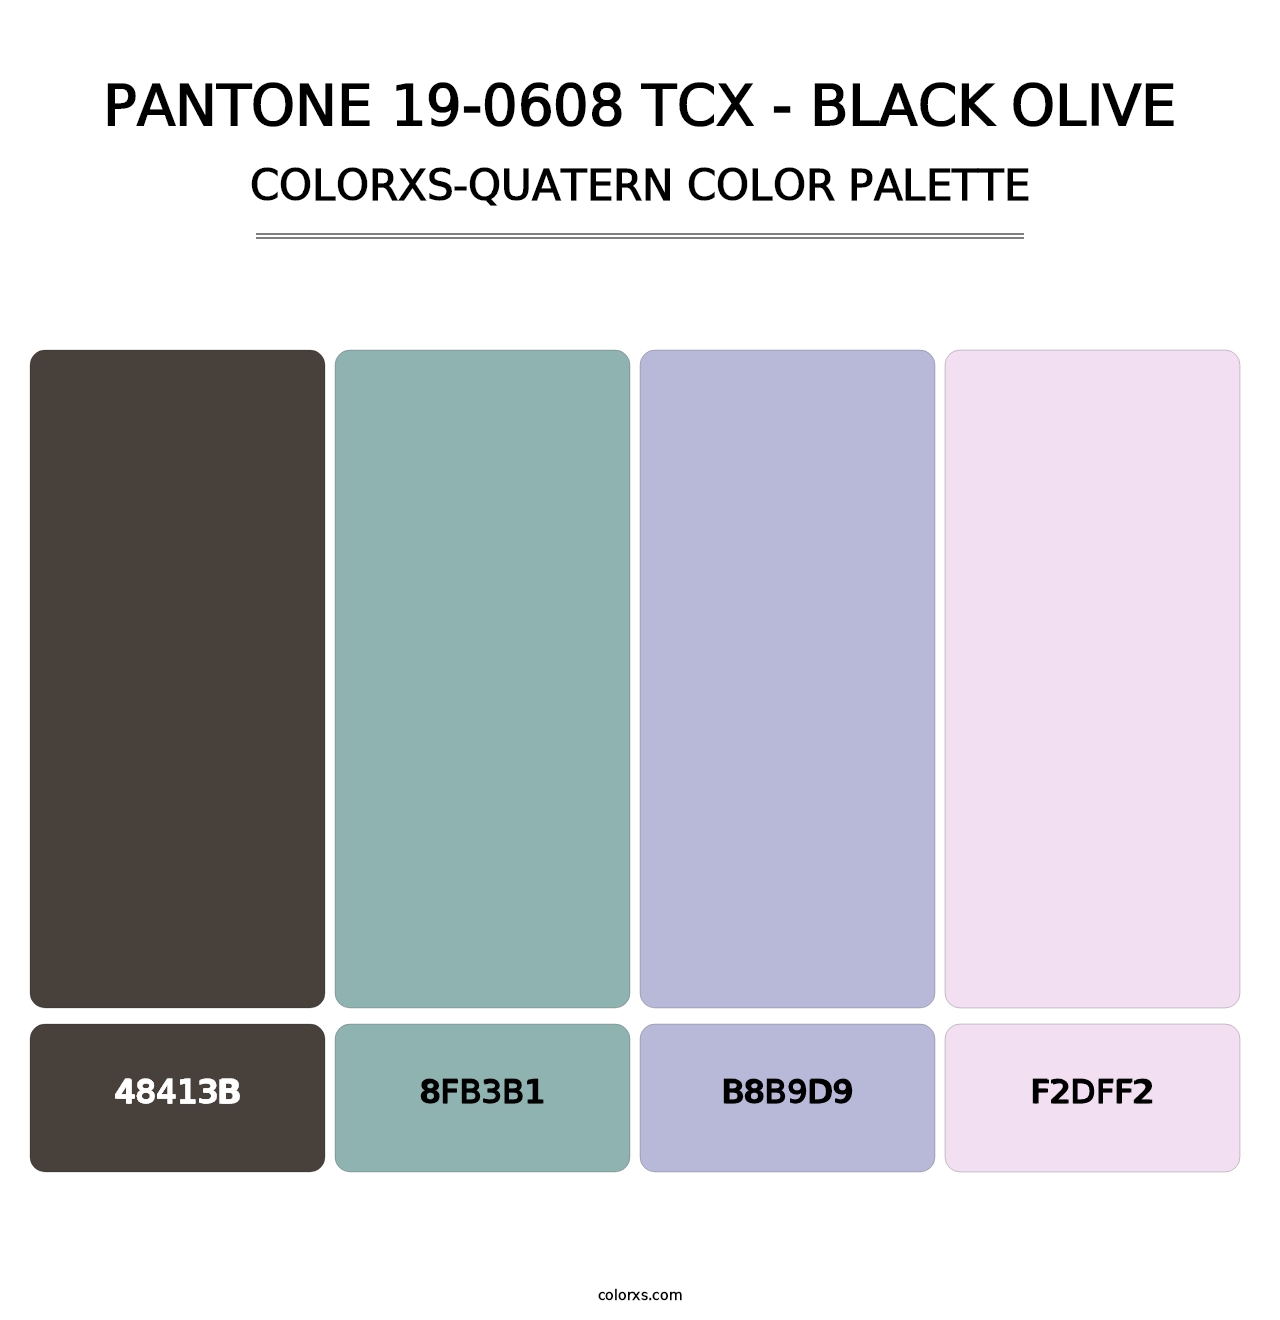 PANTONE 19-0608 TCX - Black Olive - Colorxs Quatern Palette